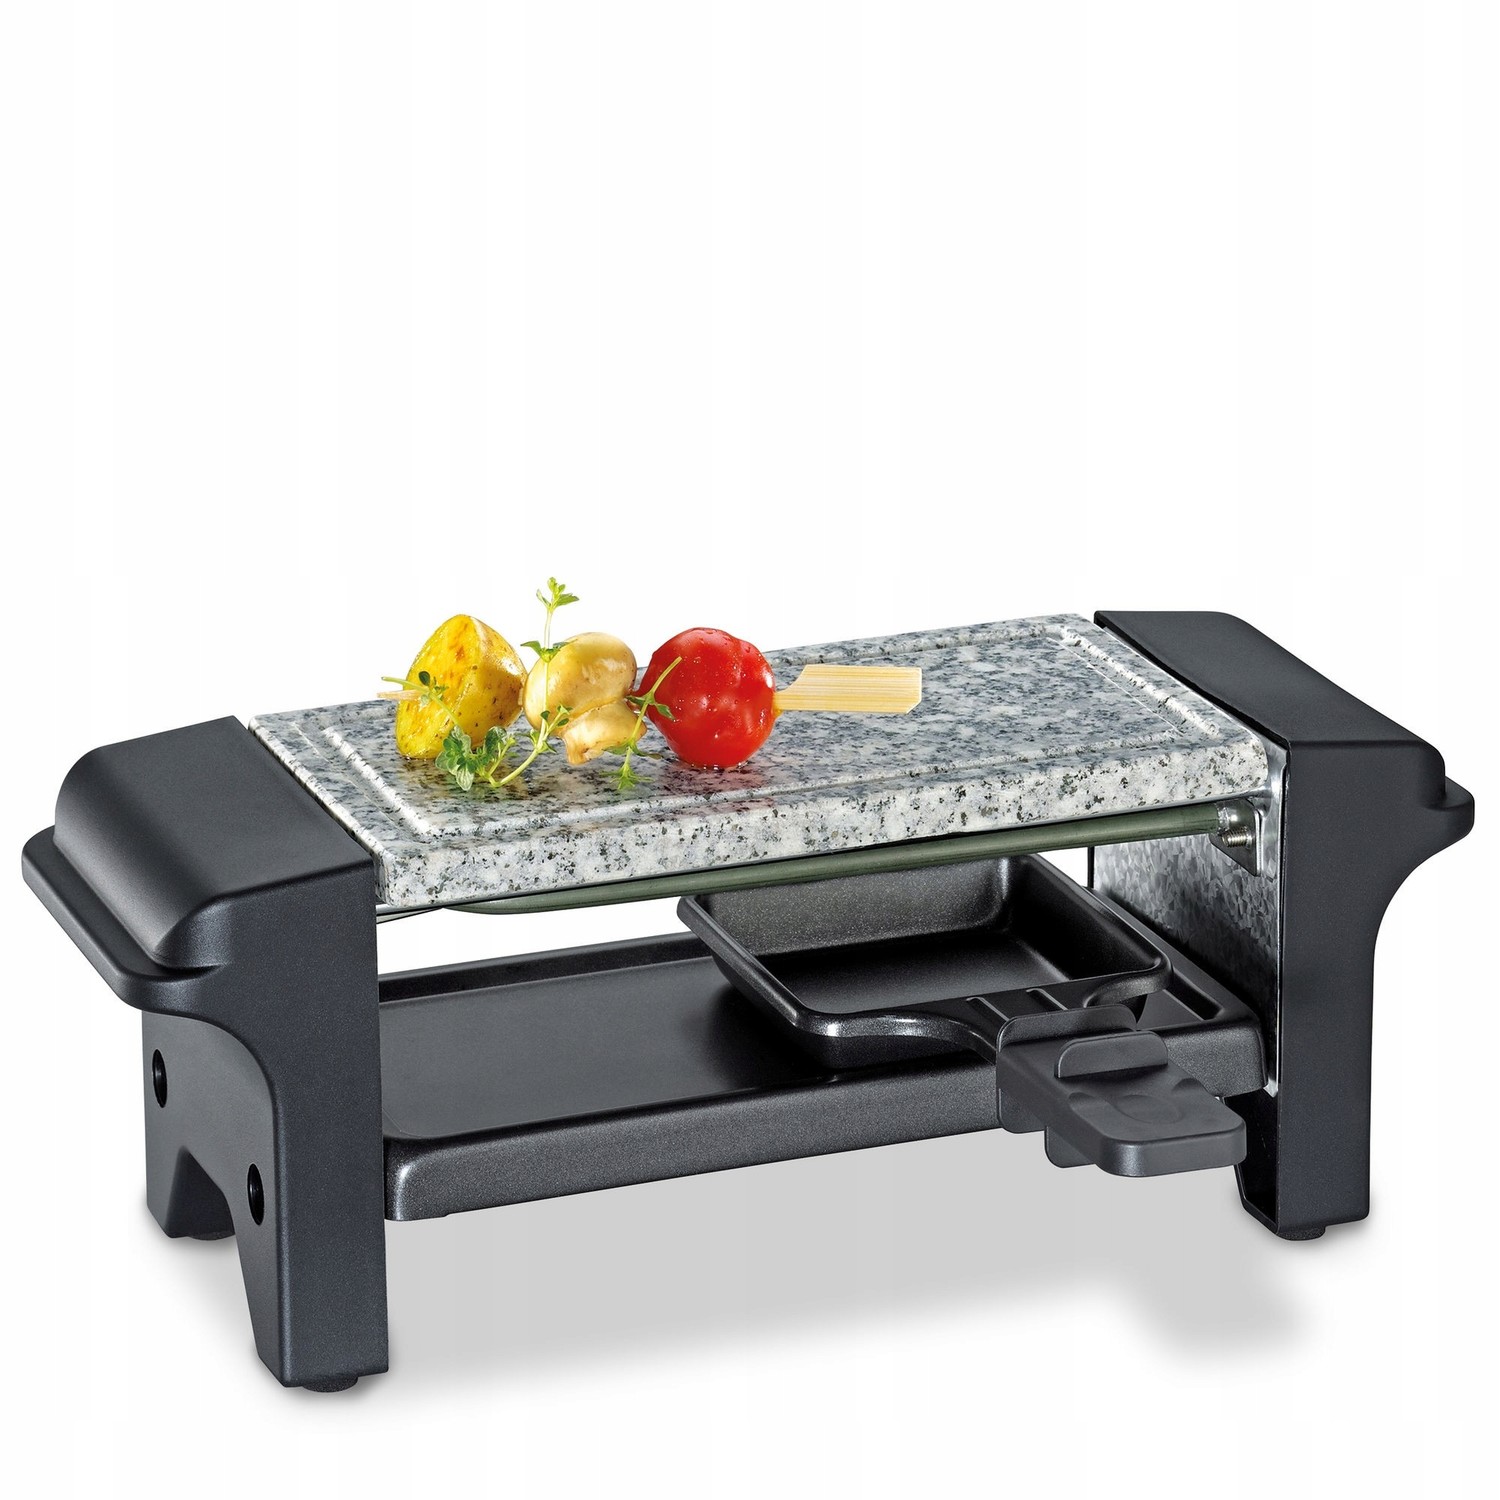 Raclette stolní gril pro 2 osoby 32 x 10 x 11 cm